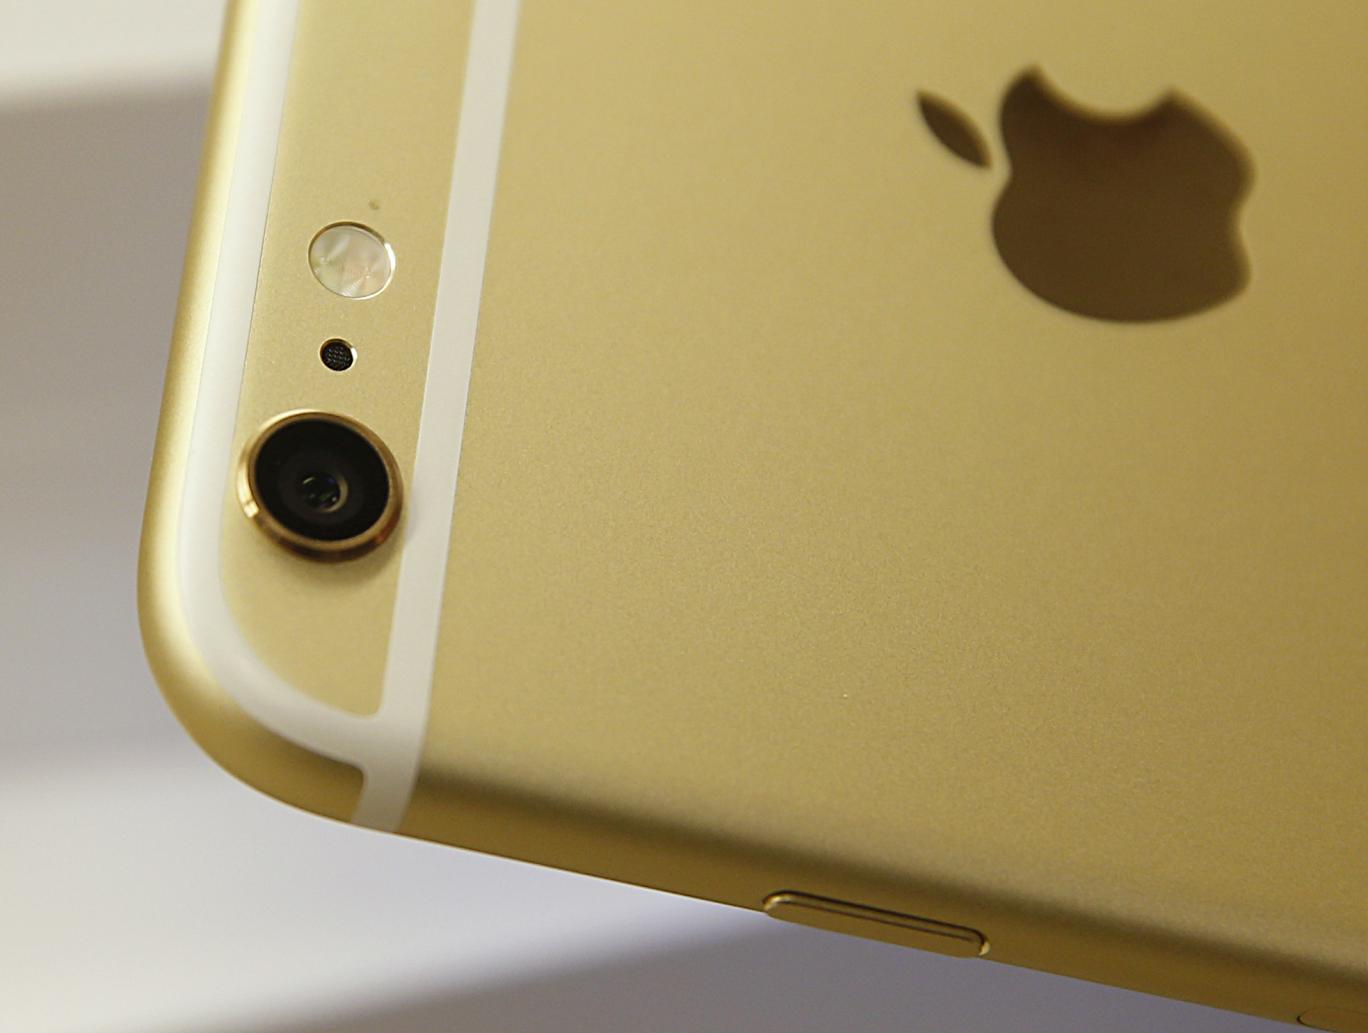 iPhone mới của Apple sẽ chụp ảnh đẹp như máy ảnh?